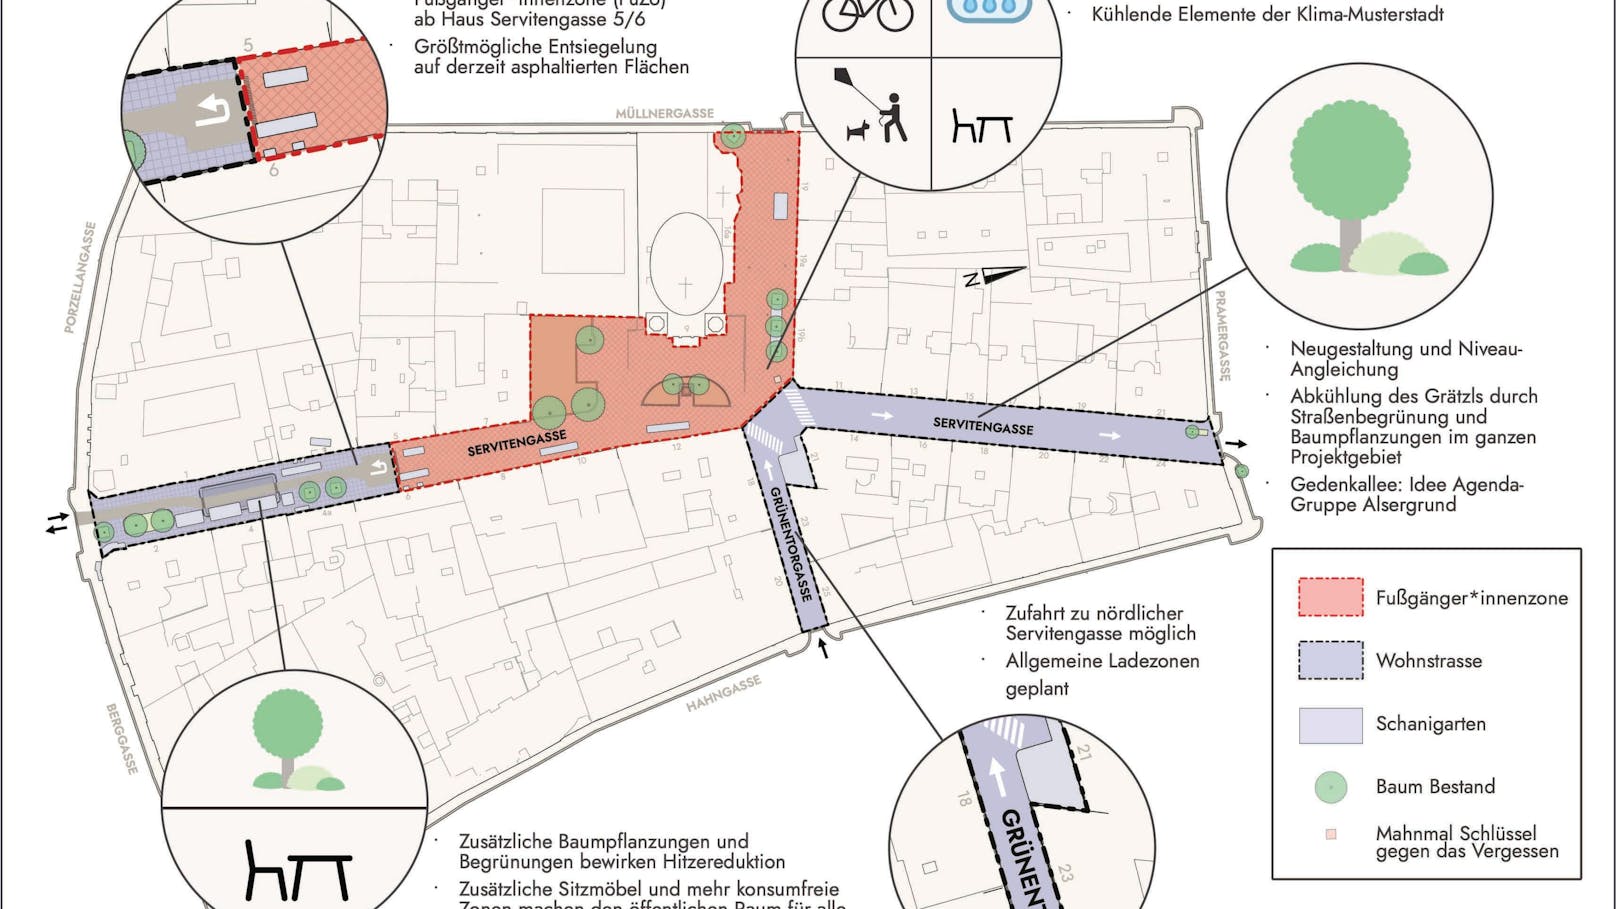 Der Plan für das Servitenviertel in Wien-Alsergrund. 